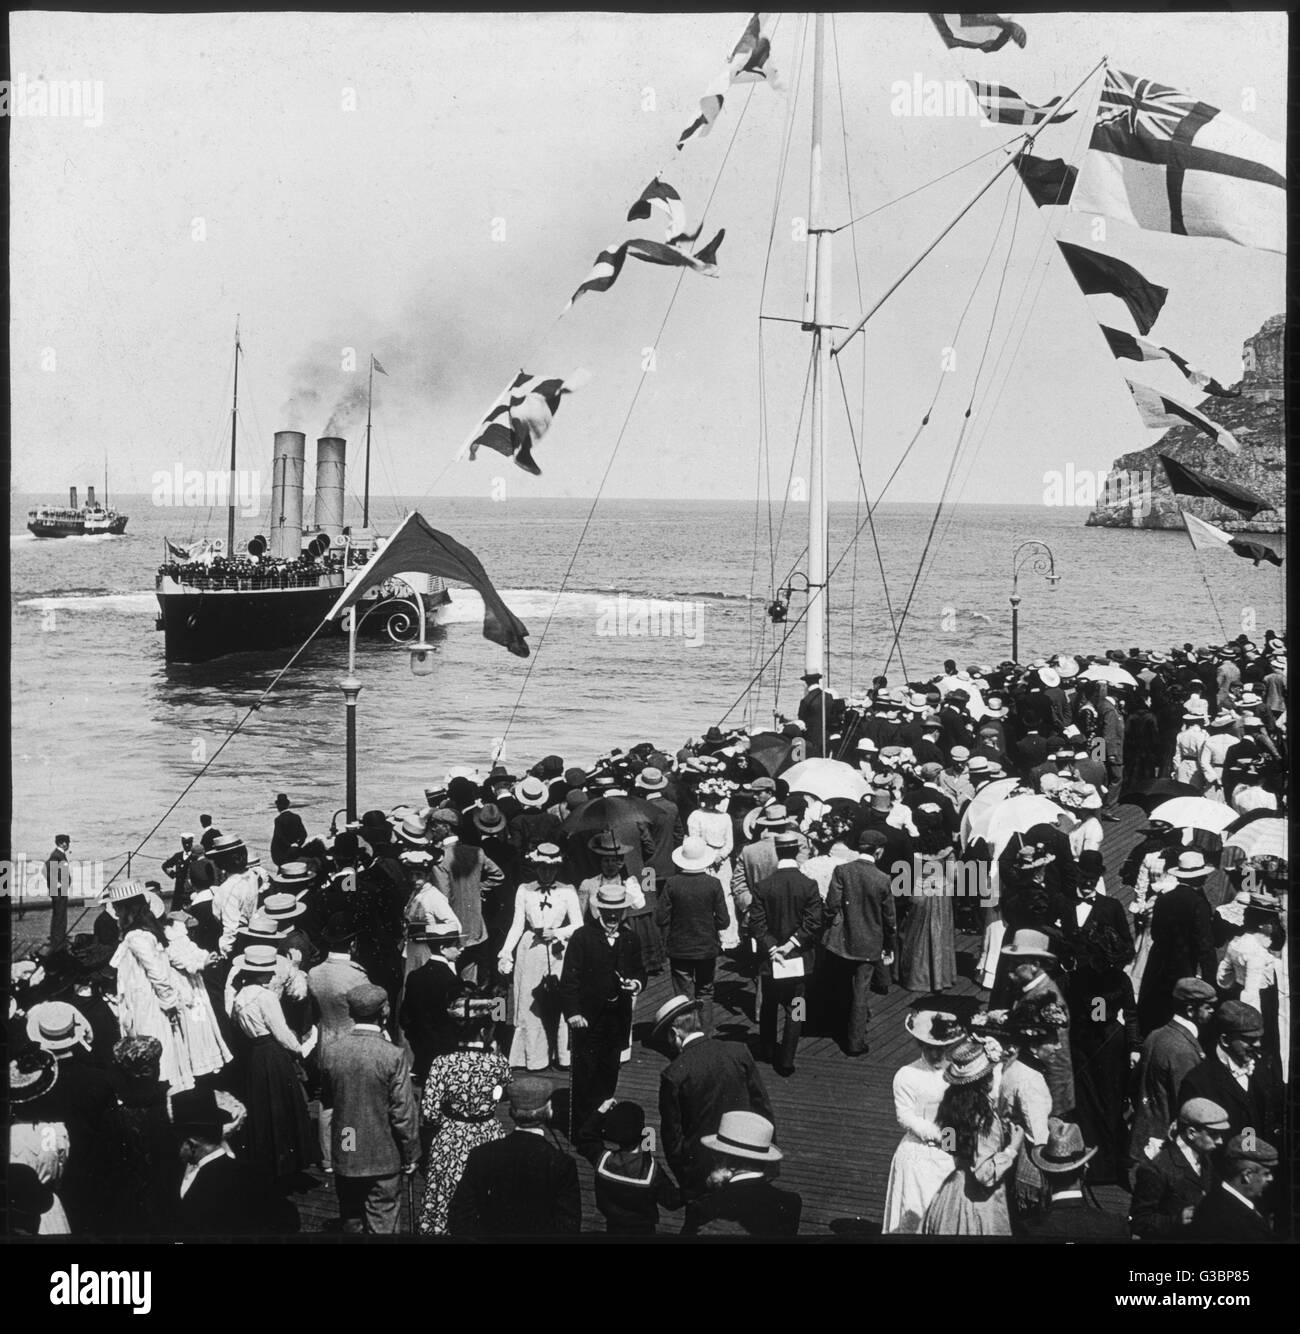 Une clameur des foules d'obtenir un bon aperçu de 'St. Elvies" un bateau à aubes du Liverpool et le Nord du Pays de Galles Steamship Co., à Llandudno, au nord du Pays de Galles. Date : 1899 Banque D'Images